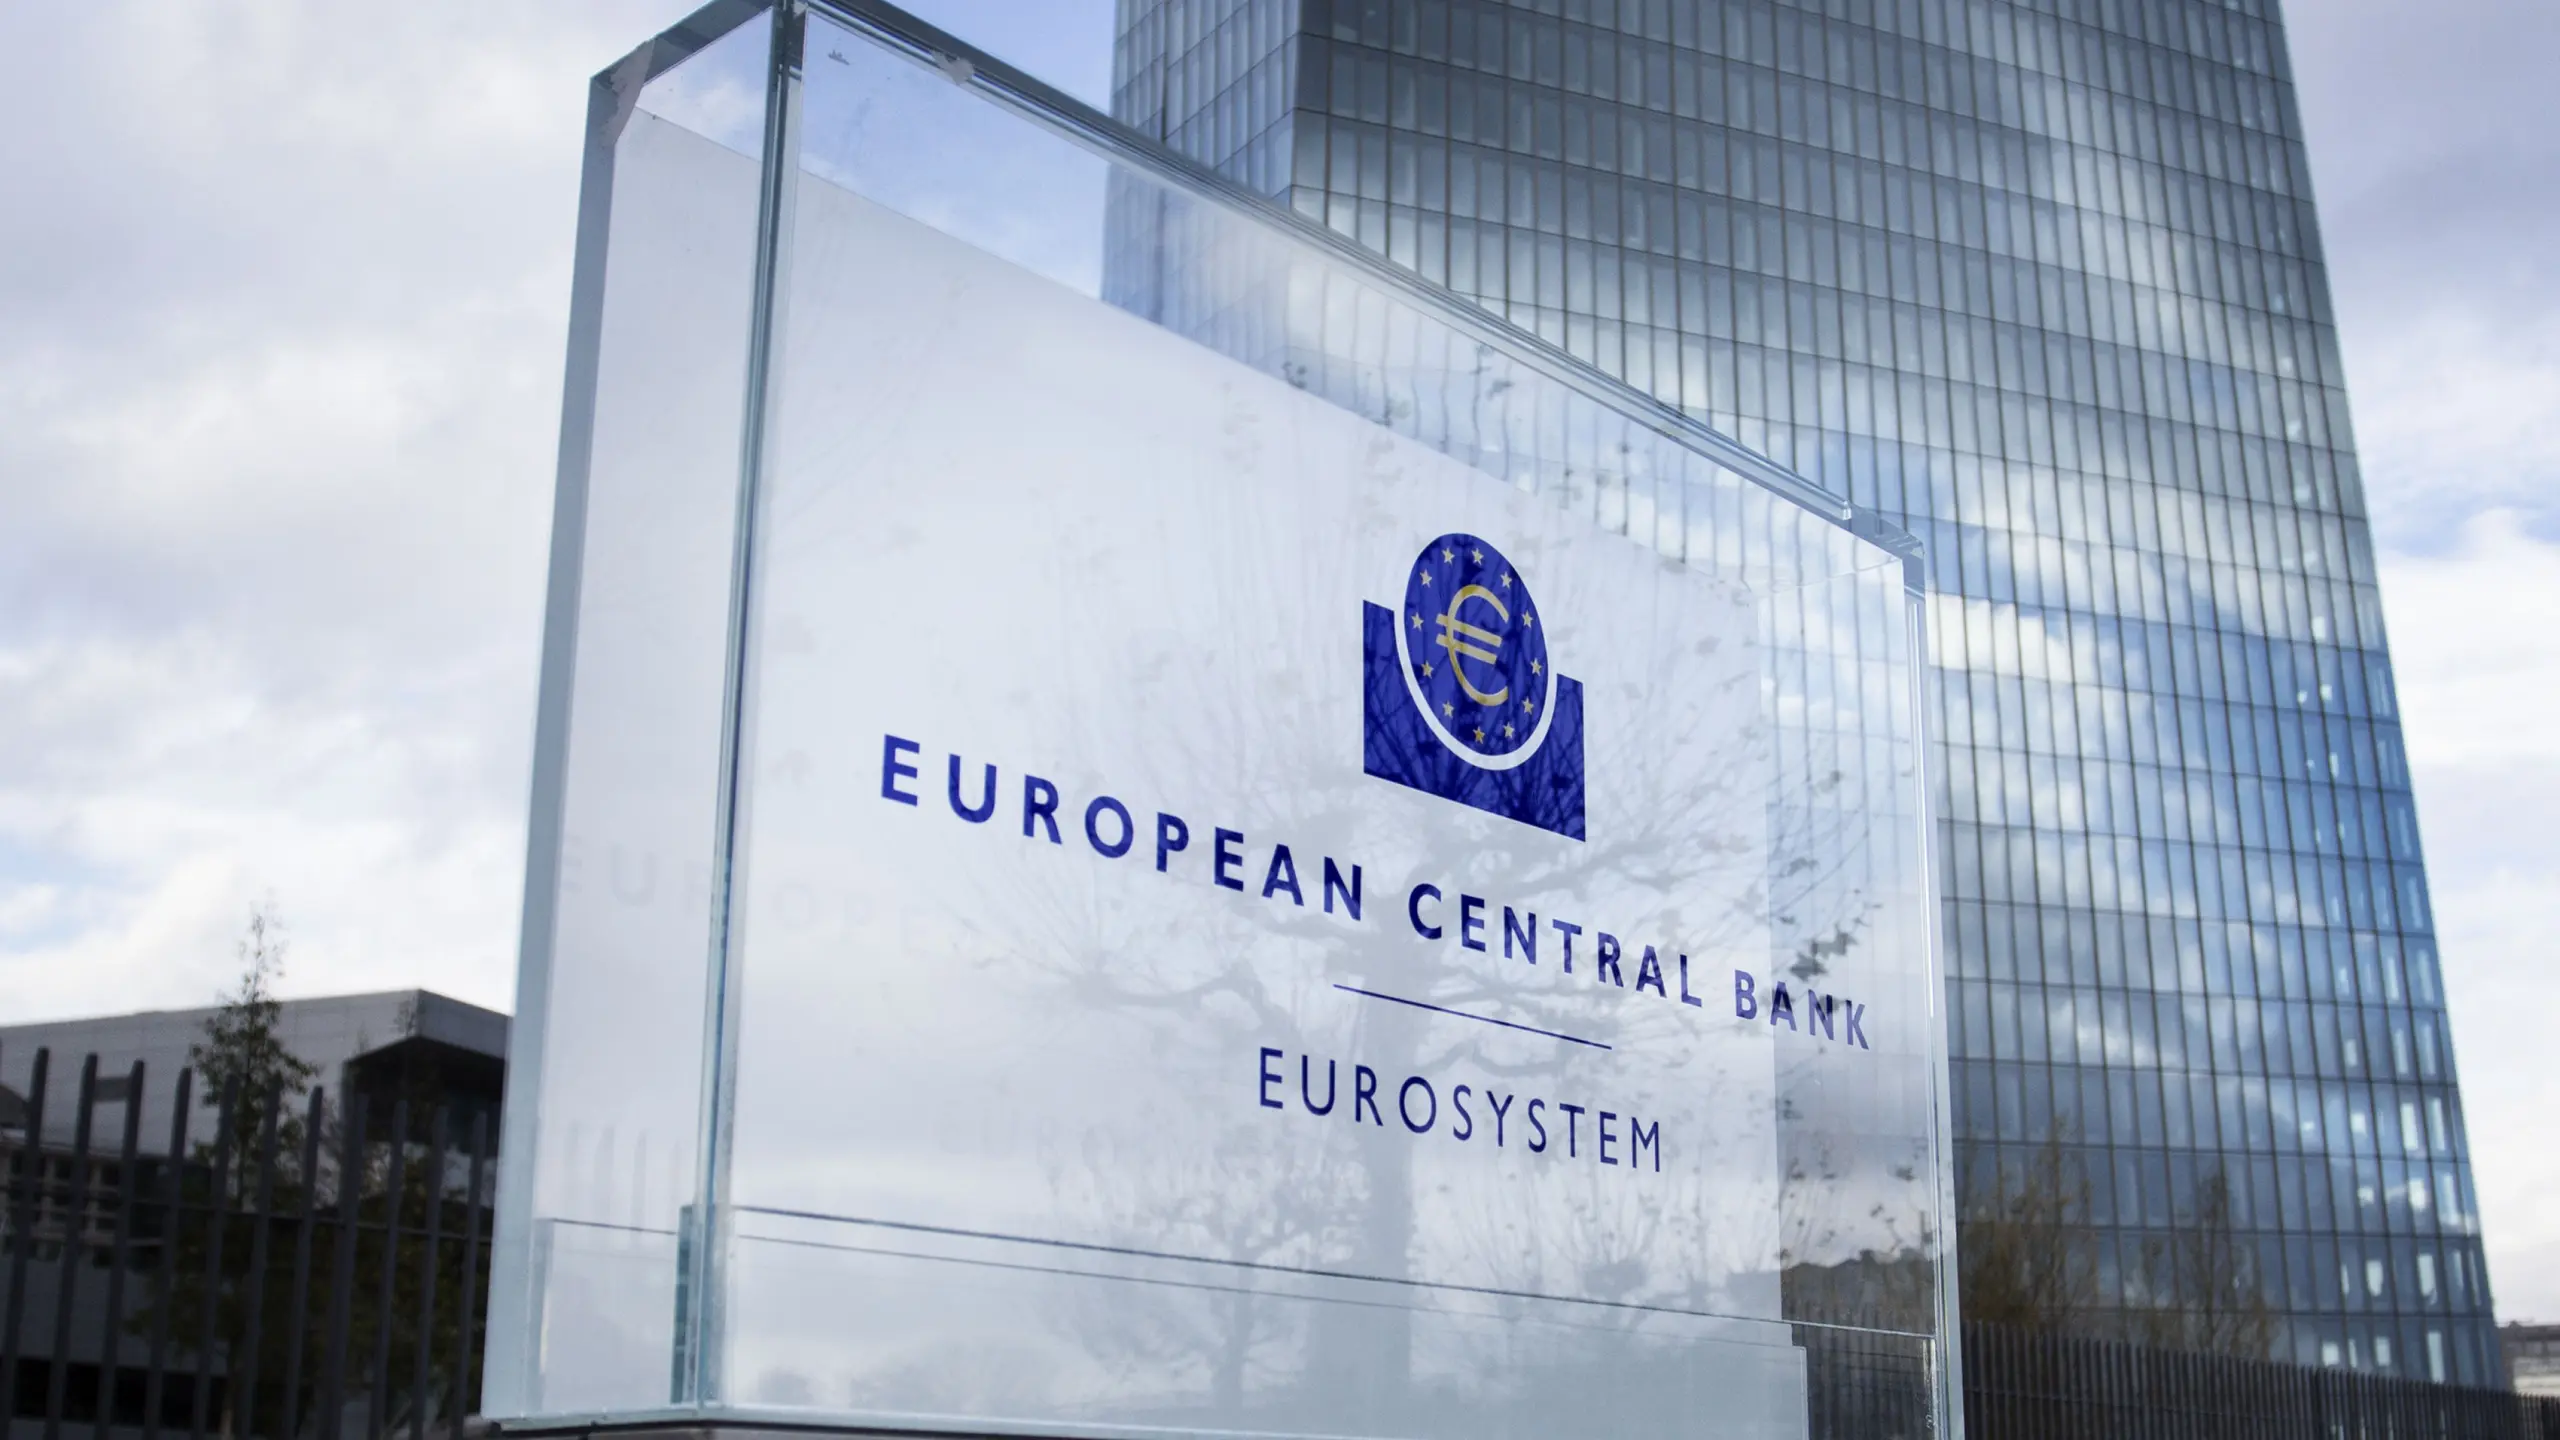 EZB-Bankenwächter senken Aufsichtsgebühren für kleinere Institute